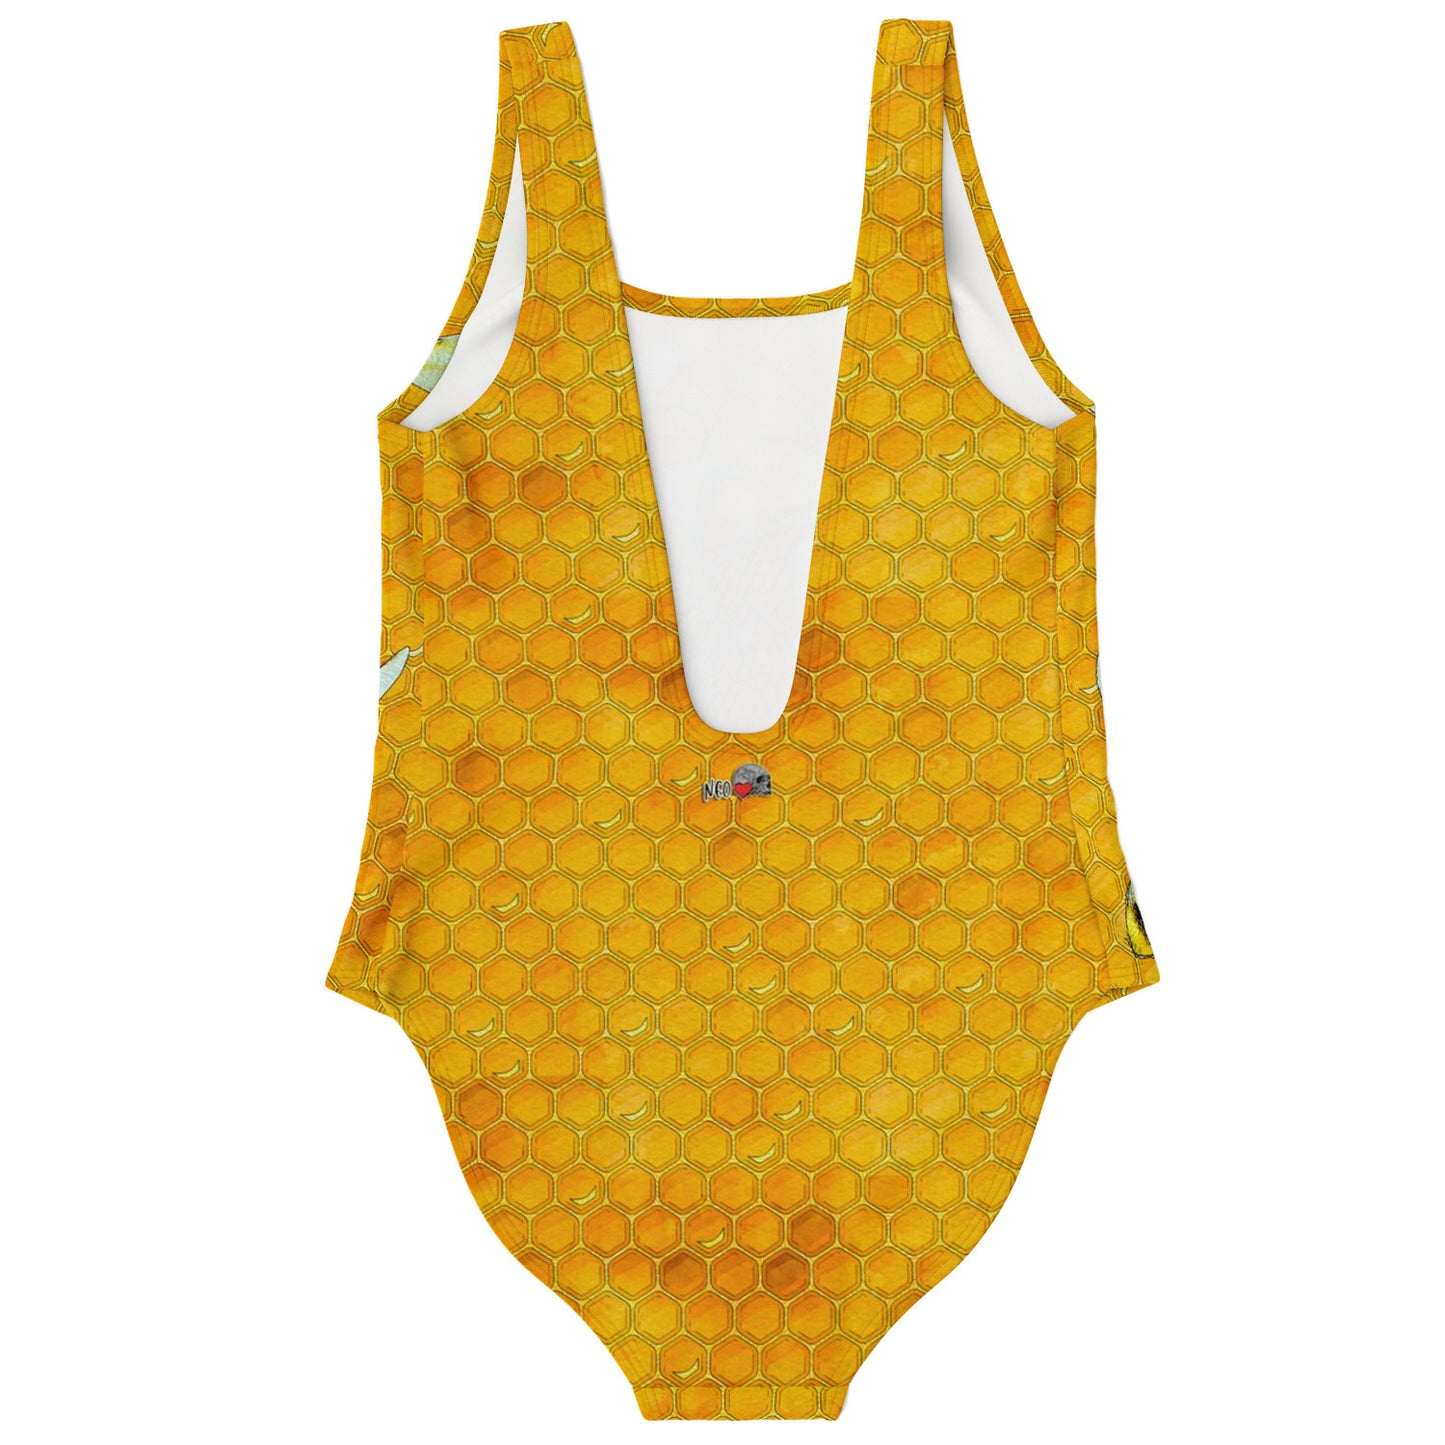 Honey Comb Skull Swimsuit - NeoSkull